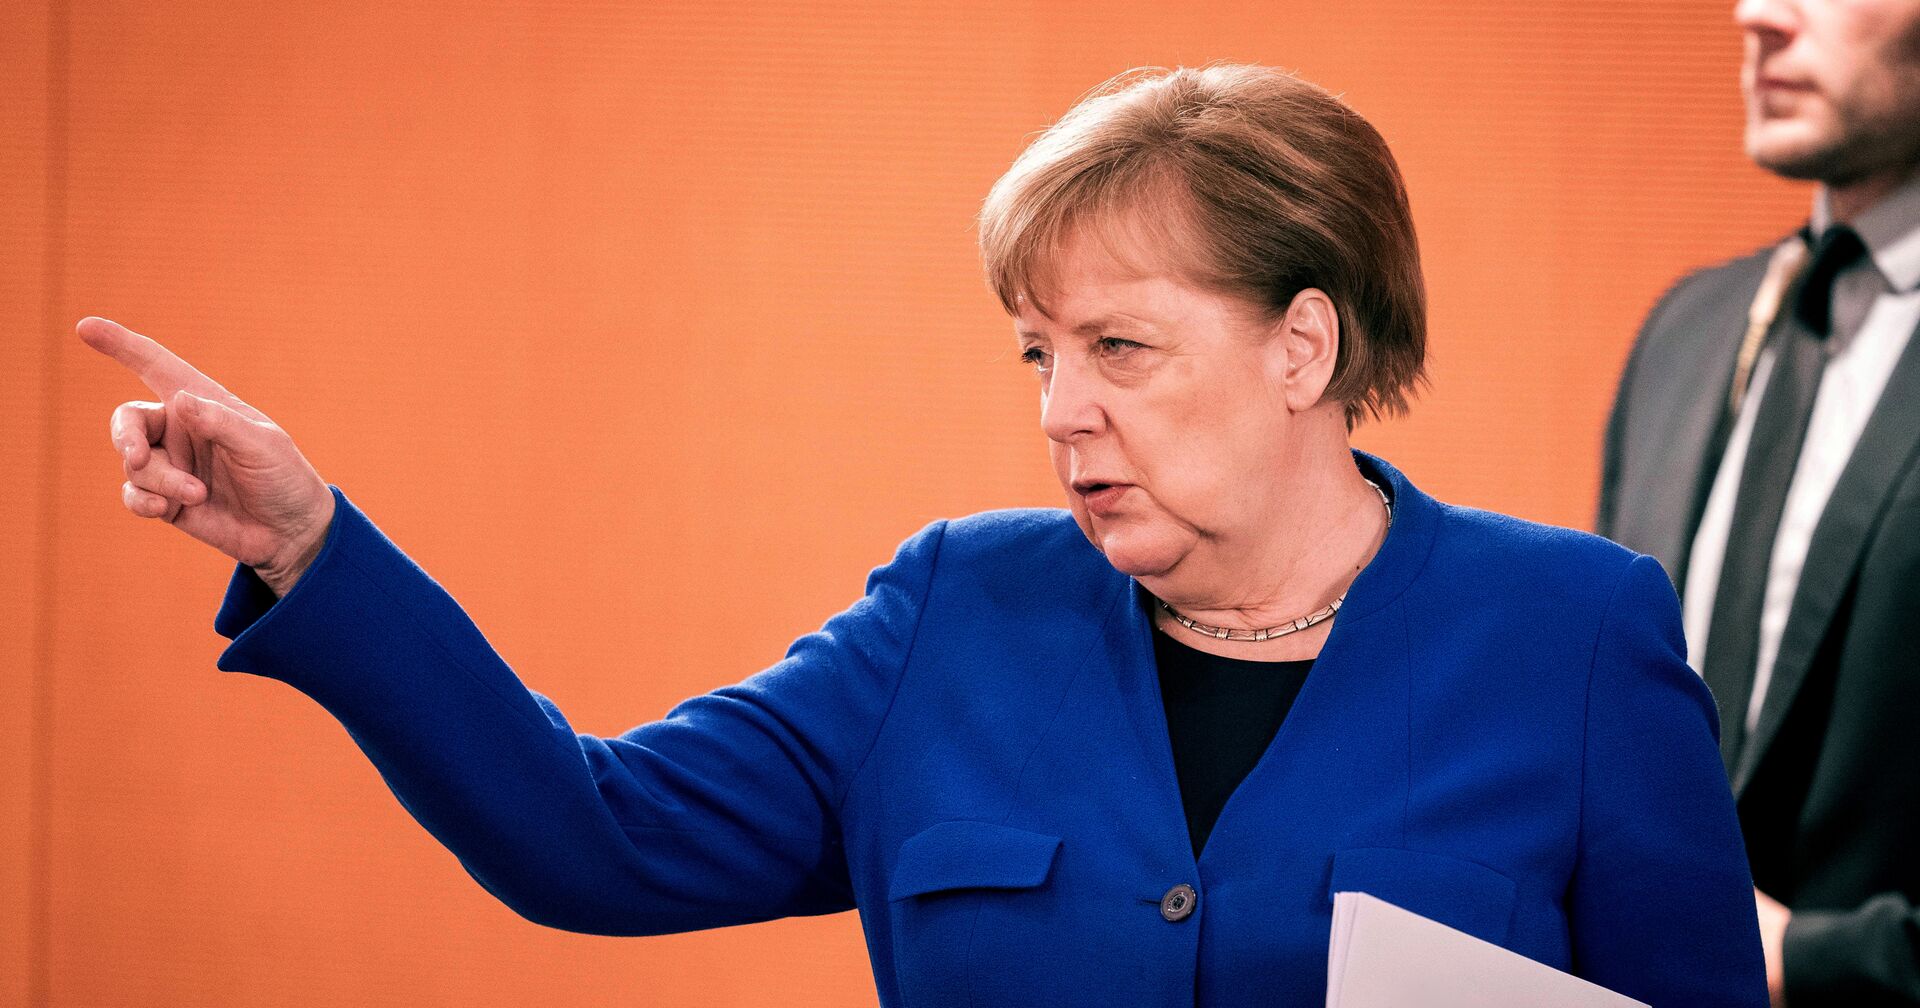 13 мая 2020. Ангела Меркель на заседании кабинета министров в Берлине, Германия - ИноСМИ, 1920, 25.01.2021